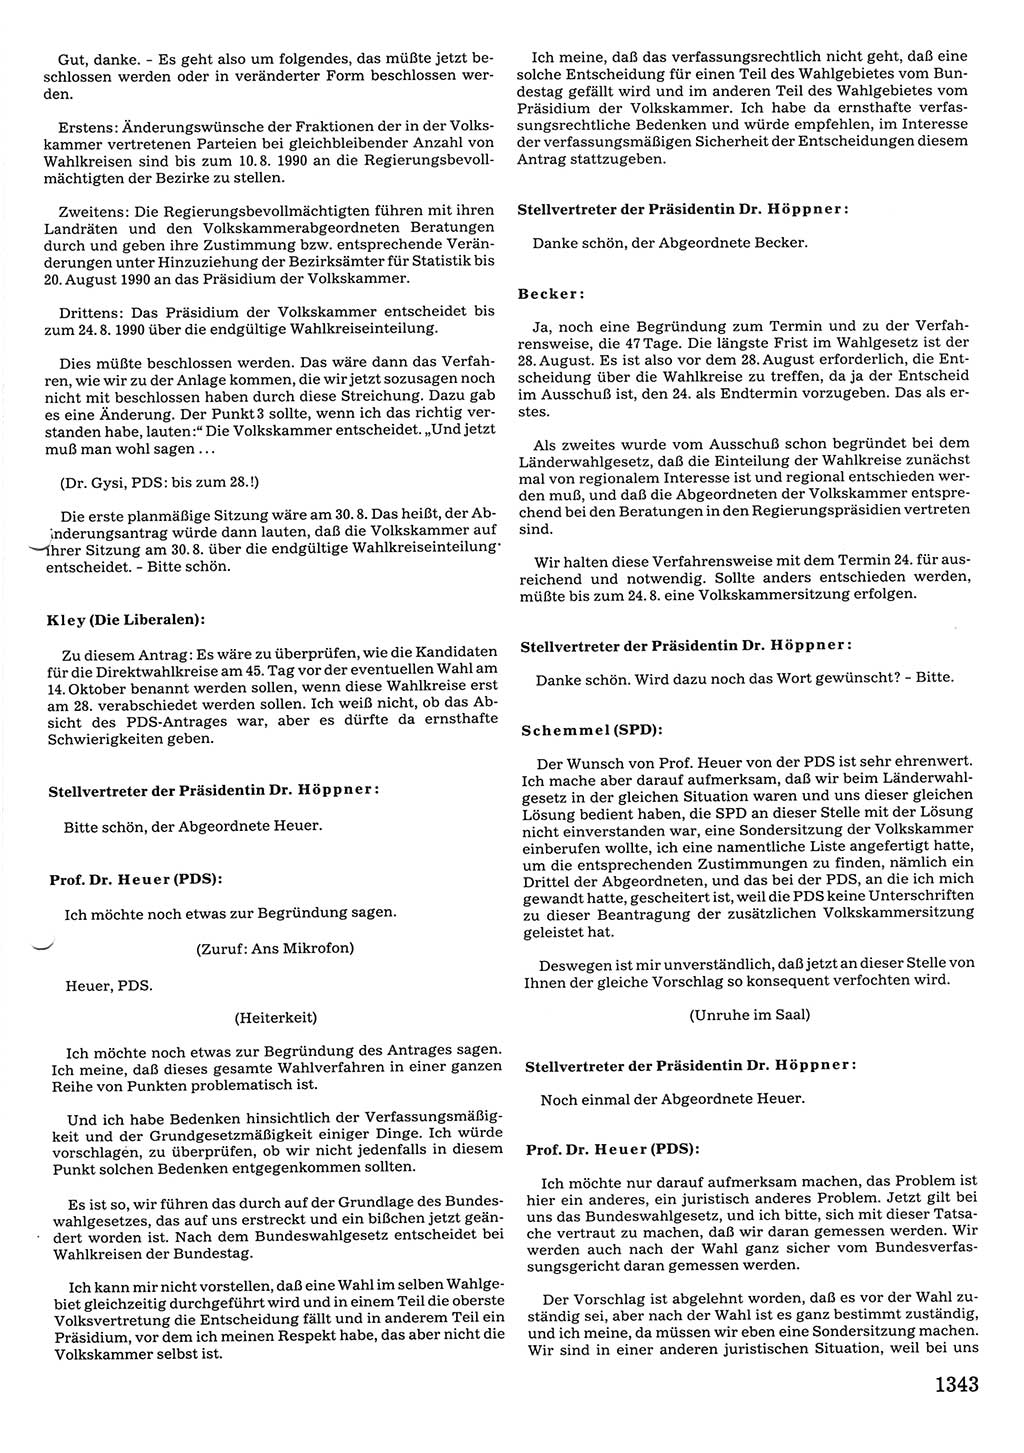 Tagungen der Volkskammer (VK) der Deutschen Demokratischen Republik (DDR), 10. Wahlperiode 1990, Seite 1343 (VK. DDR 10. WP. 1990, Prot. Tg. 1-38, 5.4.-2.10.1990, S. 1343)